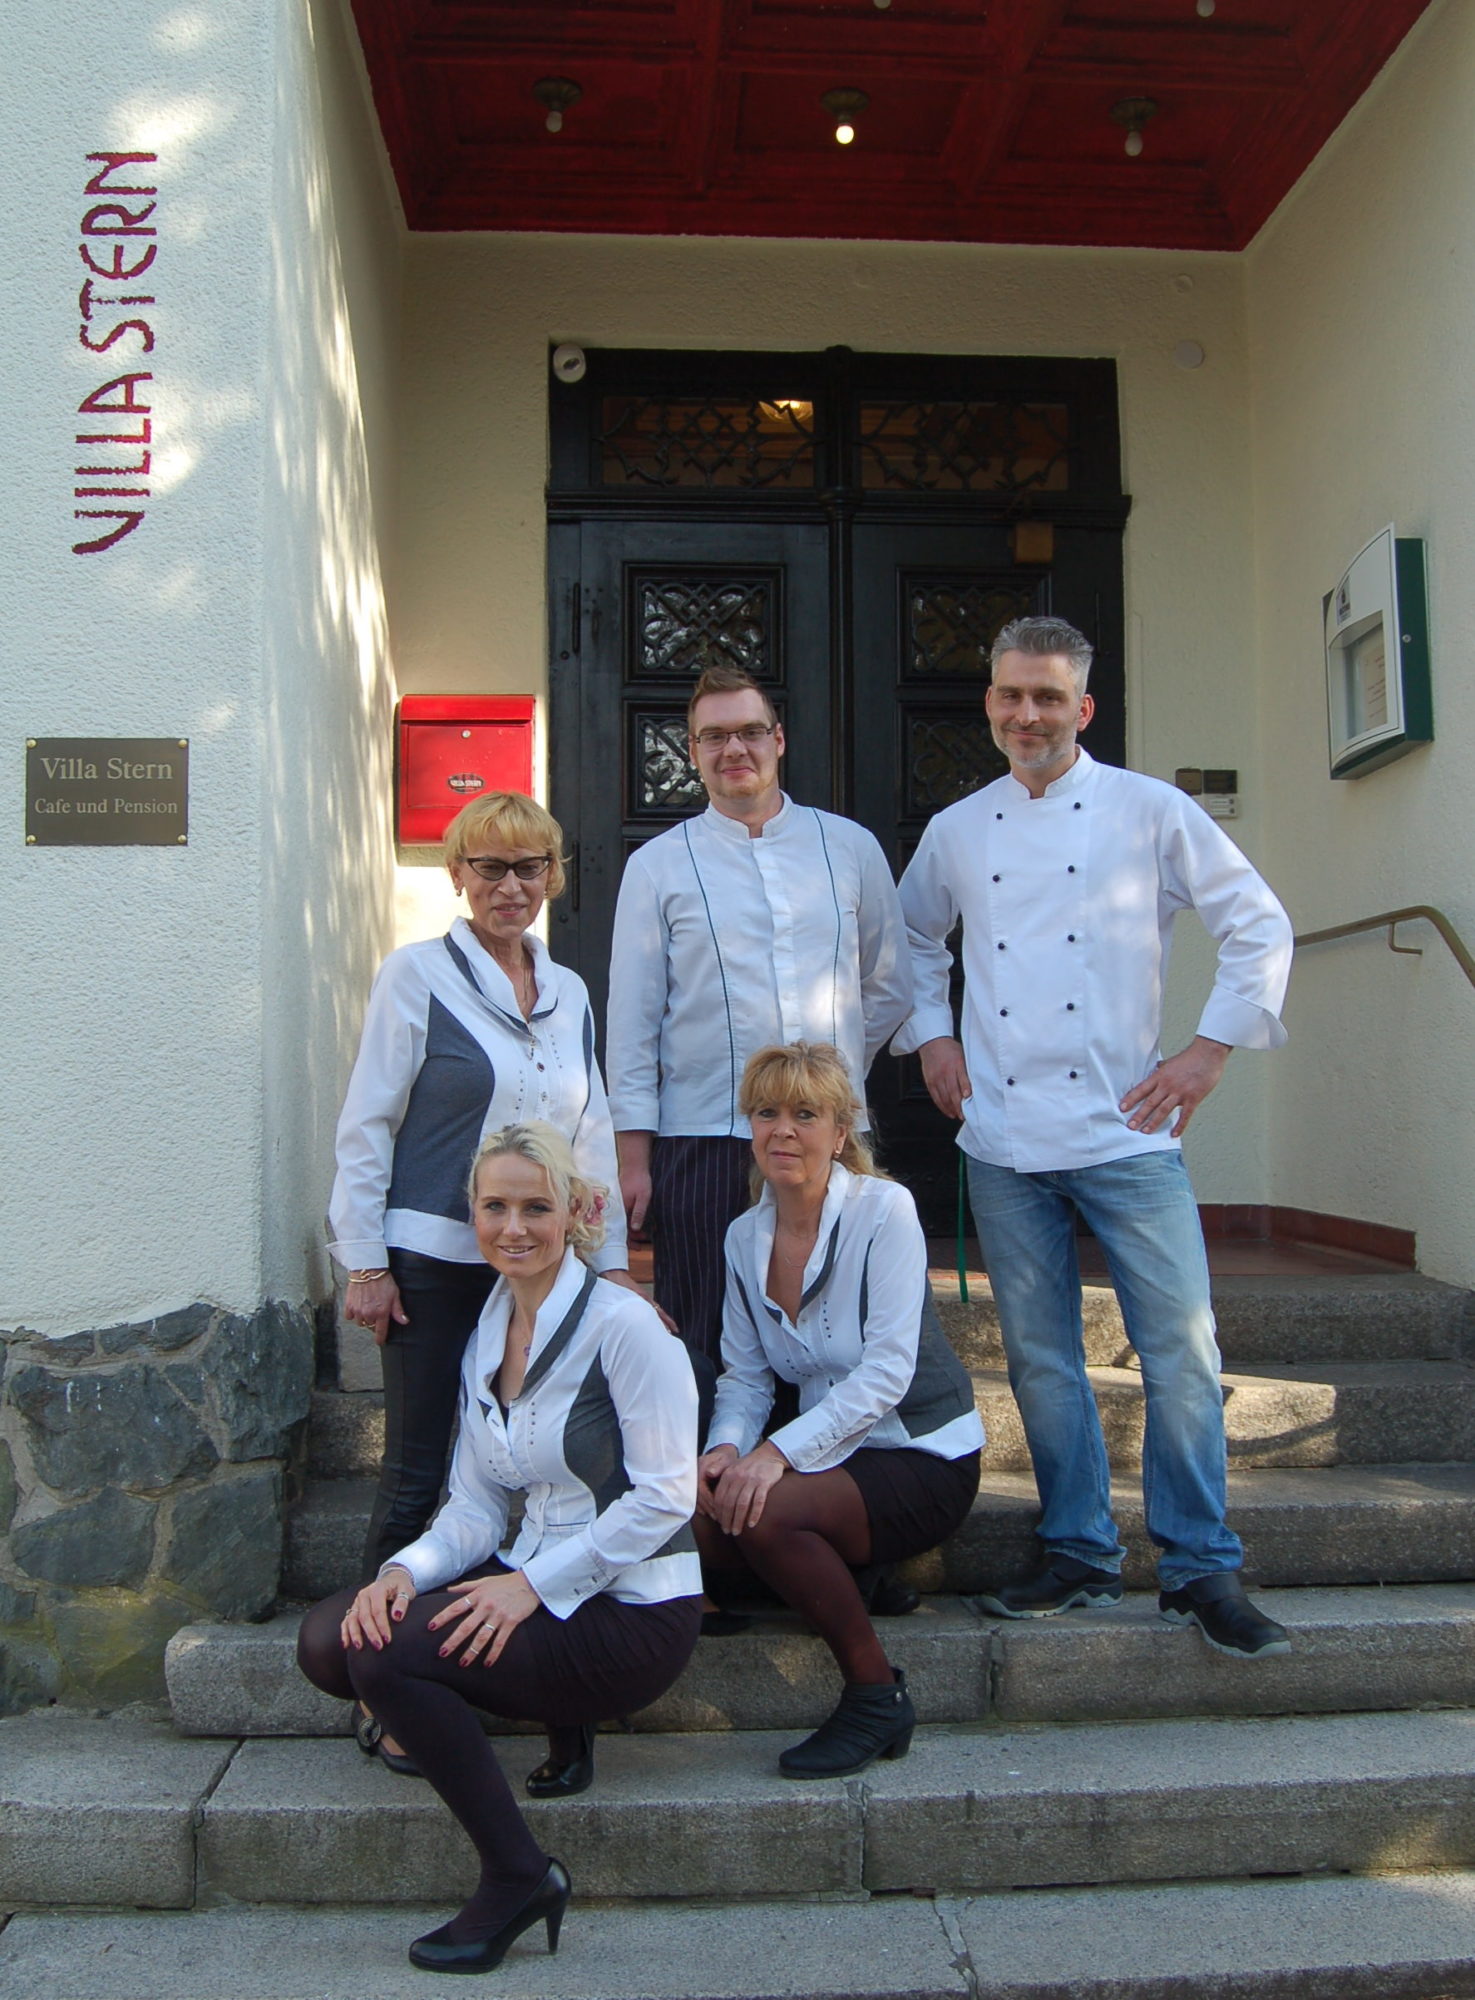 Unser Team Villa Stern Restaurant Pension Neukirchen Erz